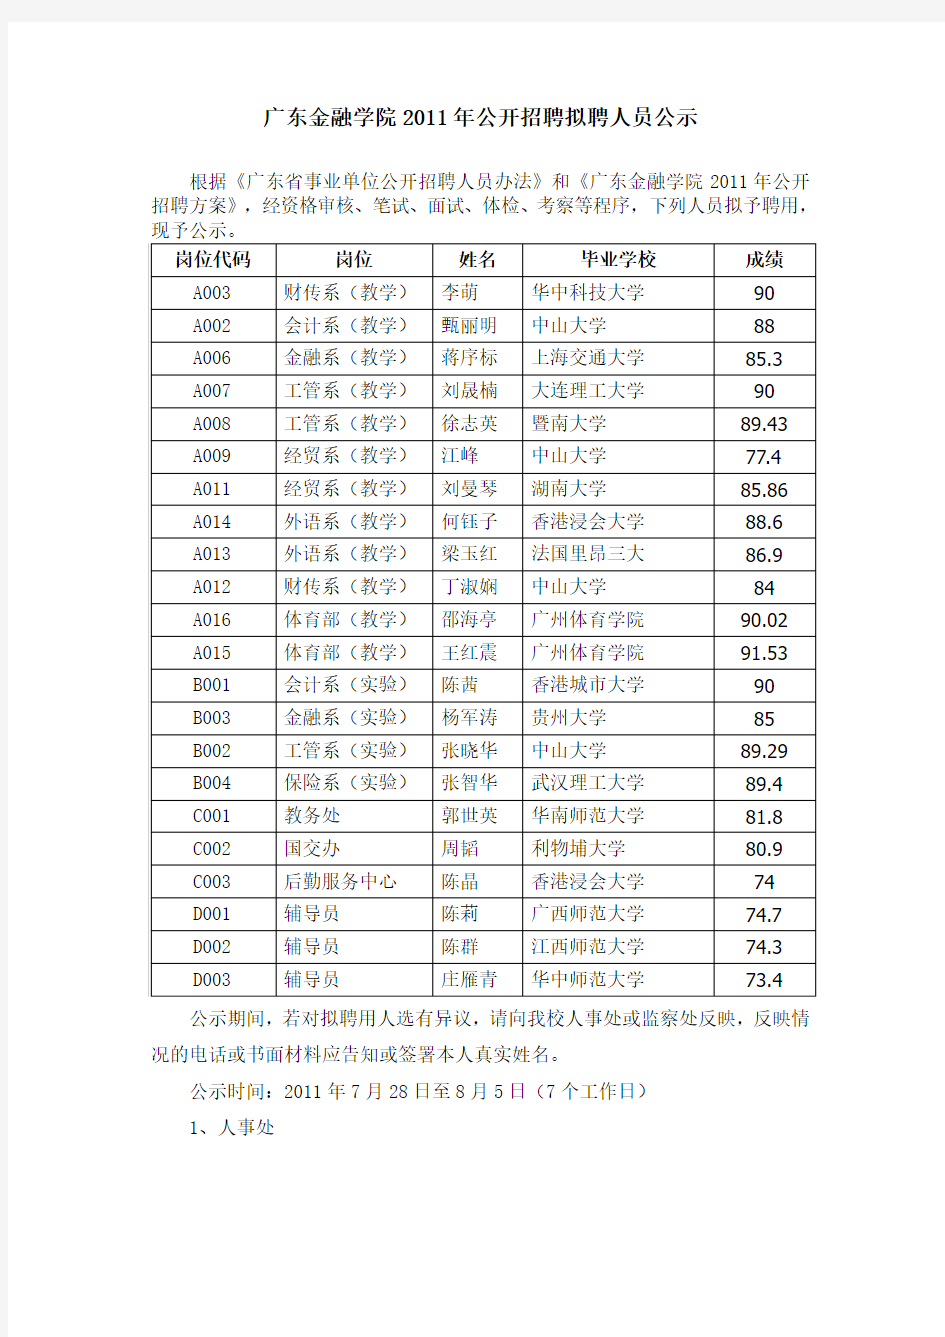 广东金融学院公开招聘拟聘人员公示(2011年7月28日至8月5日)